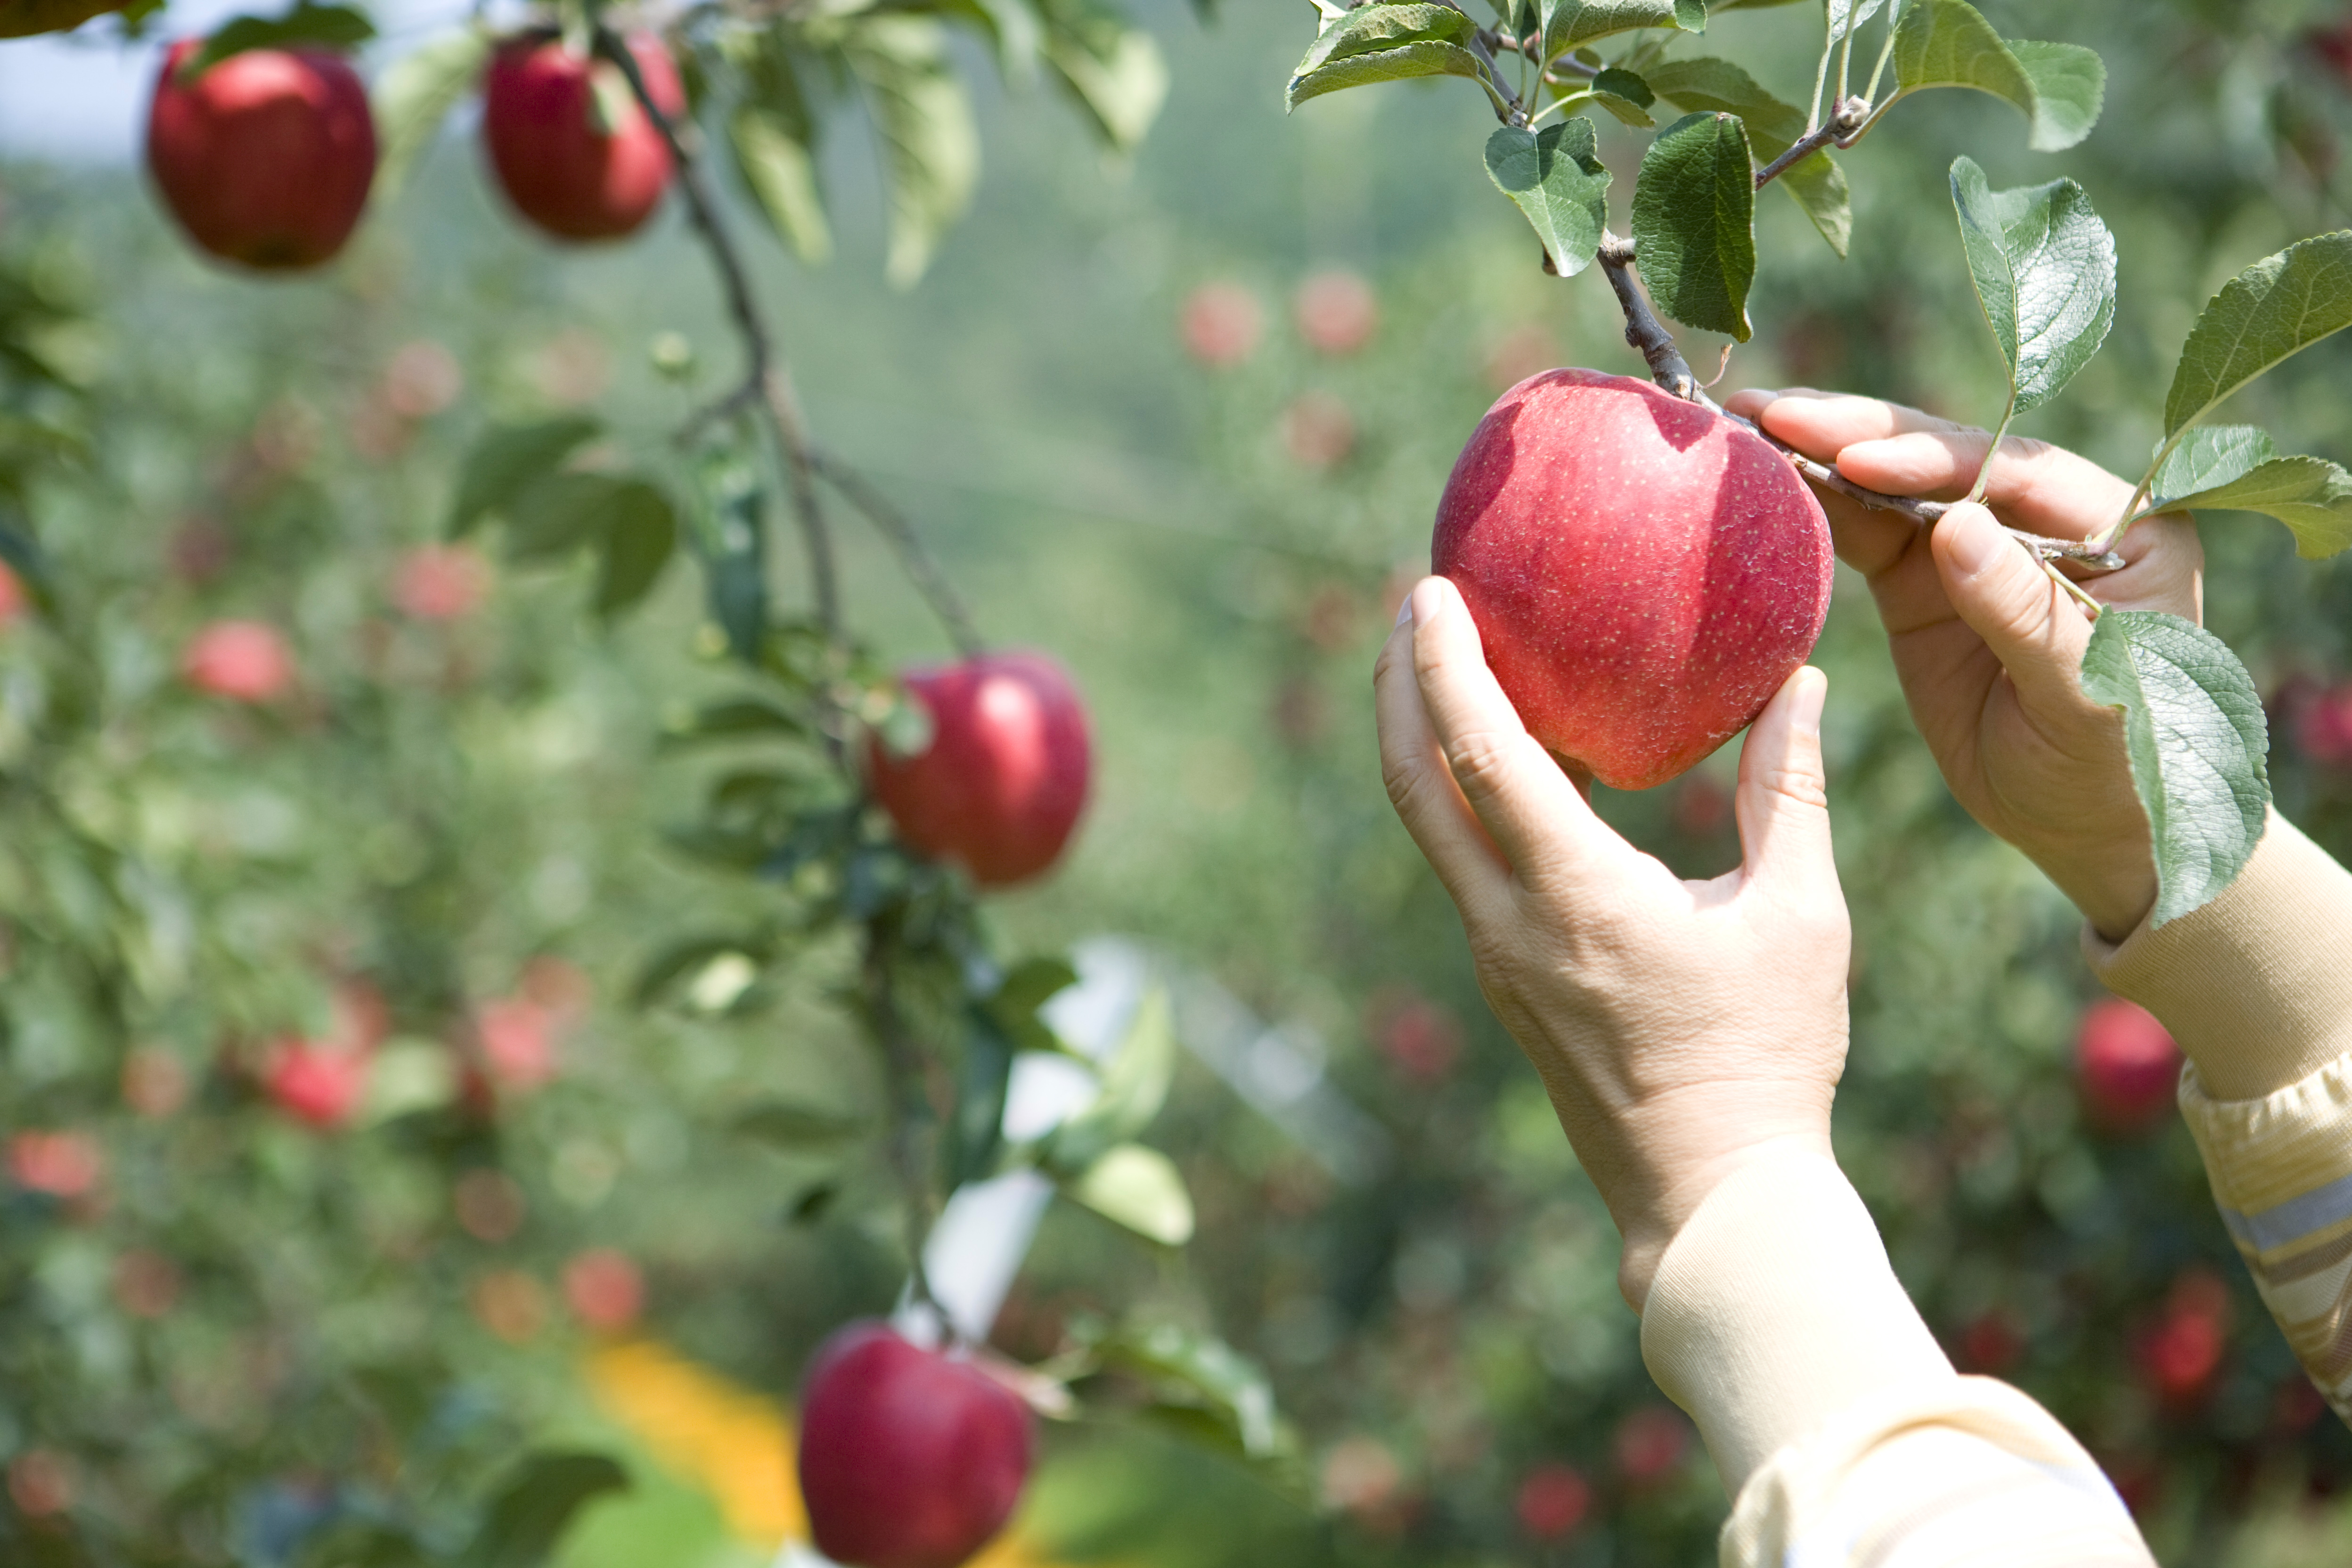 12월 생산자물가지수 증가세... 사과·딸기 등 농산품이 견인